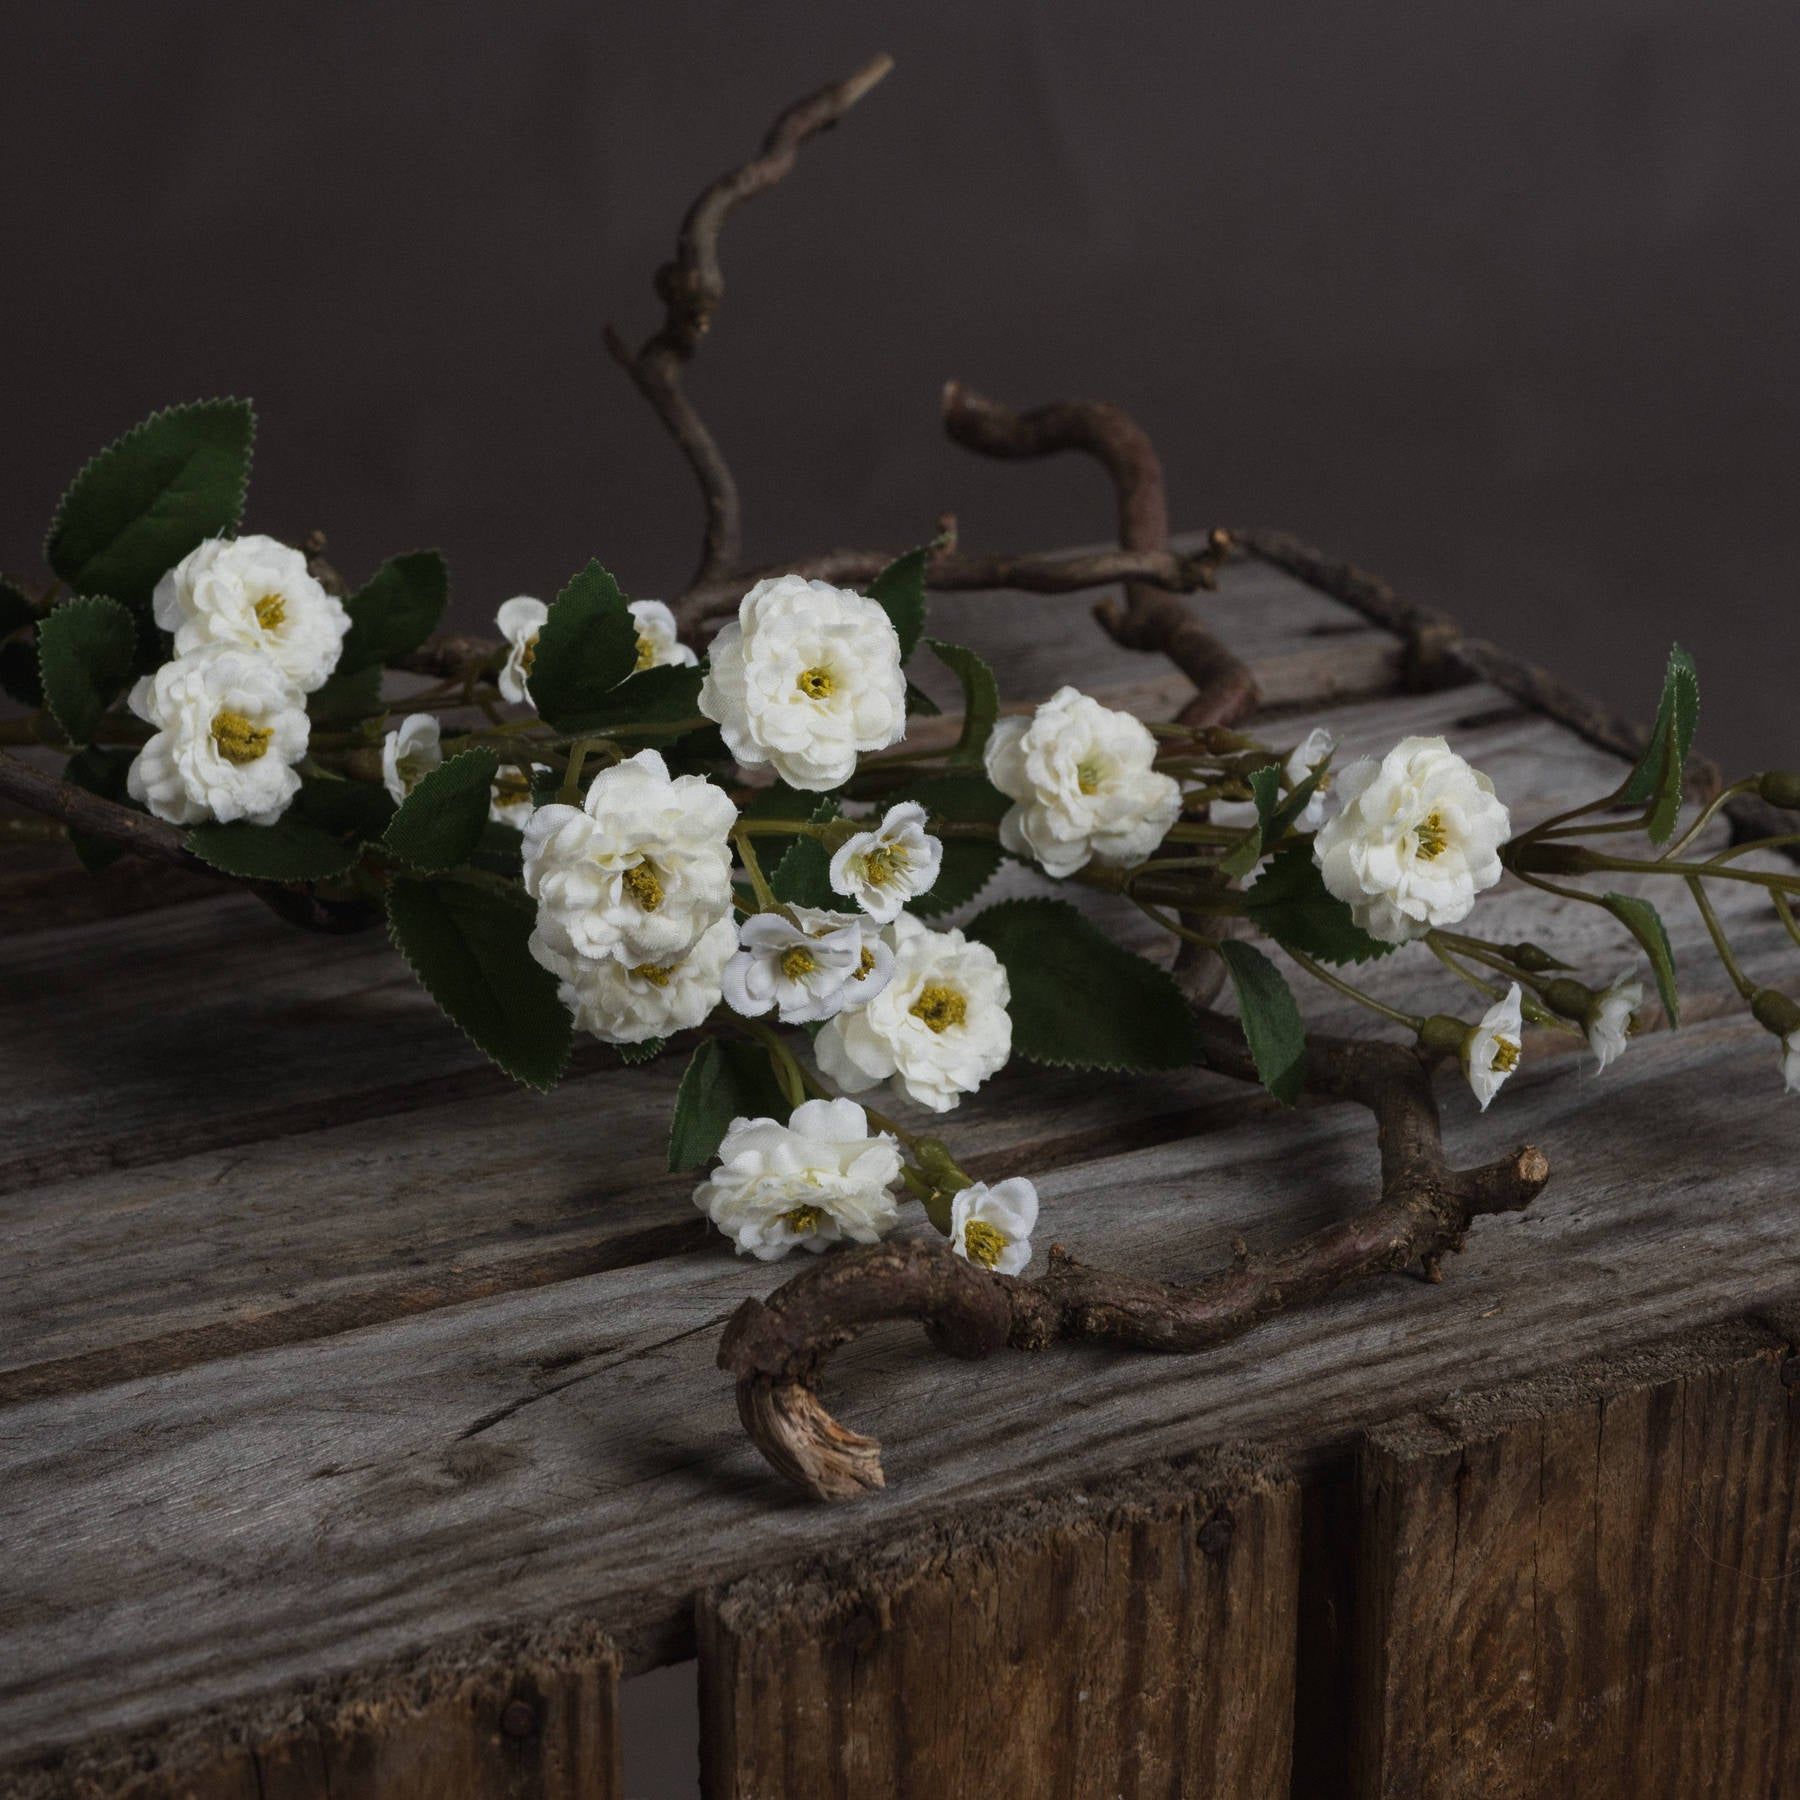 White Wild Meadow Rose - Ashton and Finch